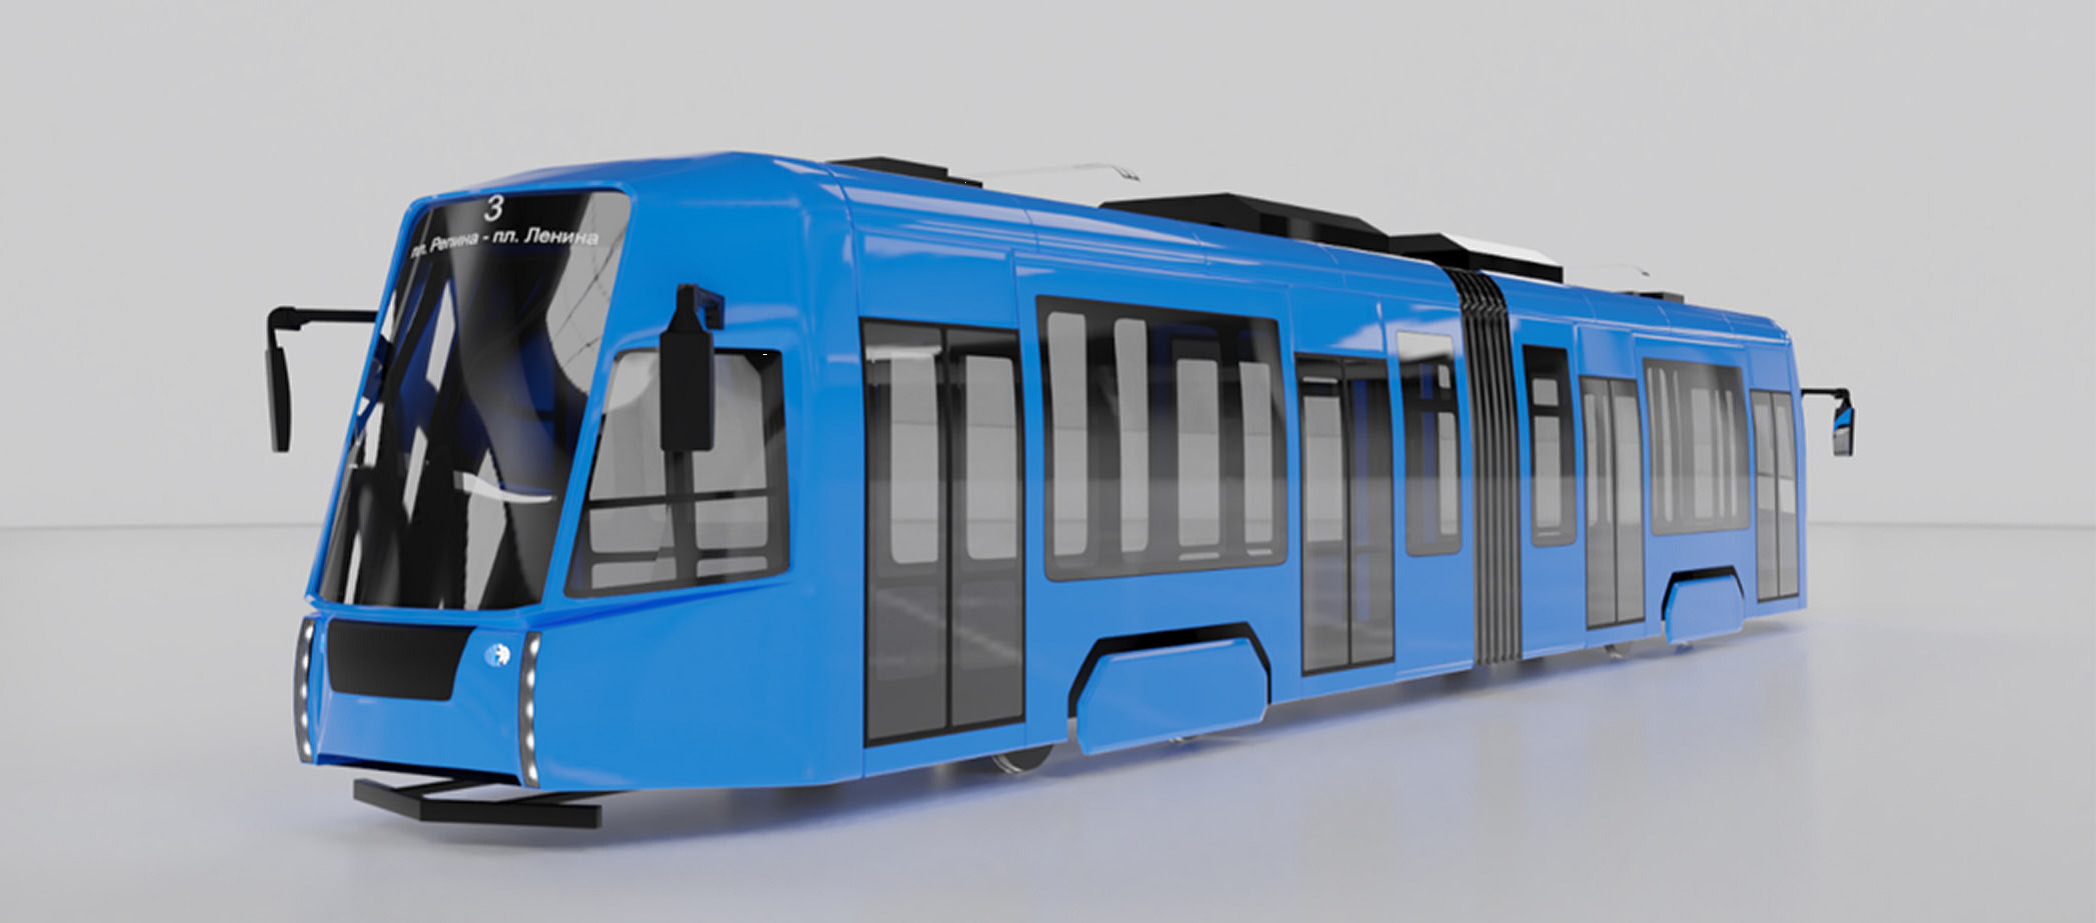 Власти рассматривают варианты покупки для метротрама в Челябинске модель 71–142, вмещающую 216 пассажиров...